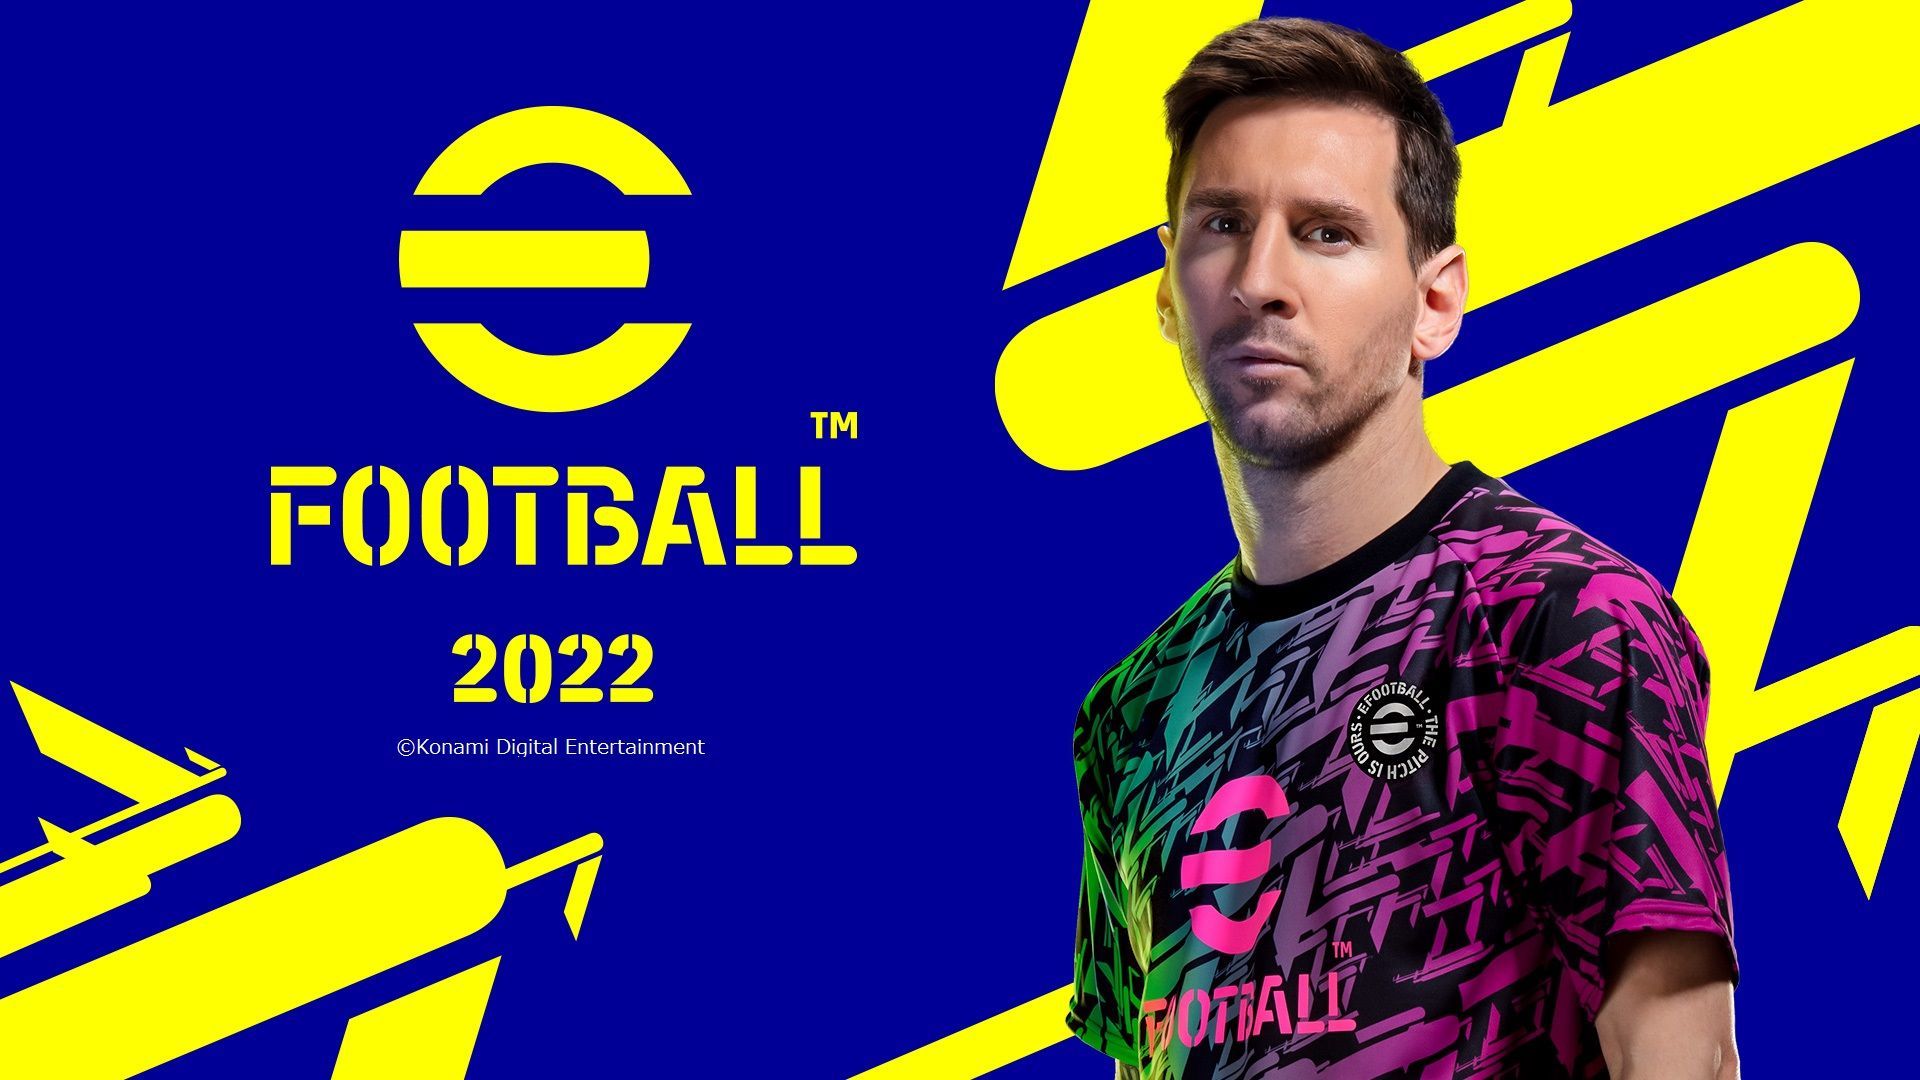 eFootball 2022: un lancement au 30 septembre avec 9 clubs sous licences